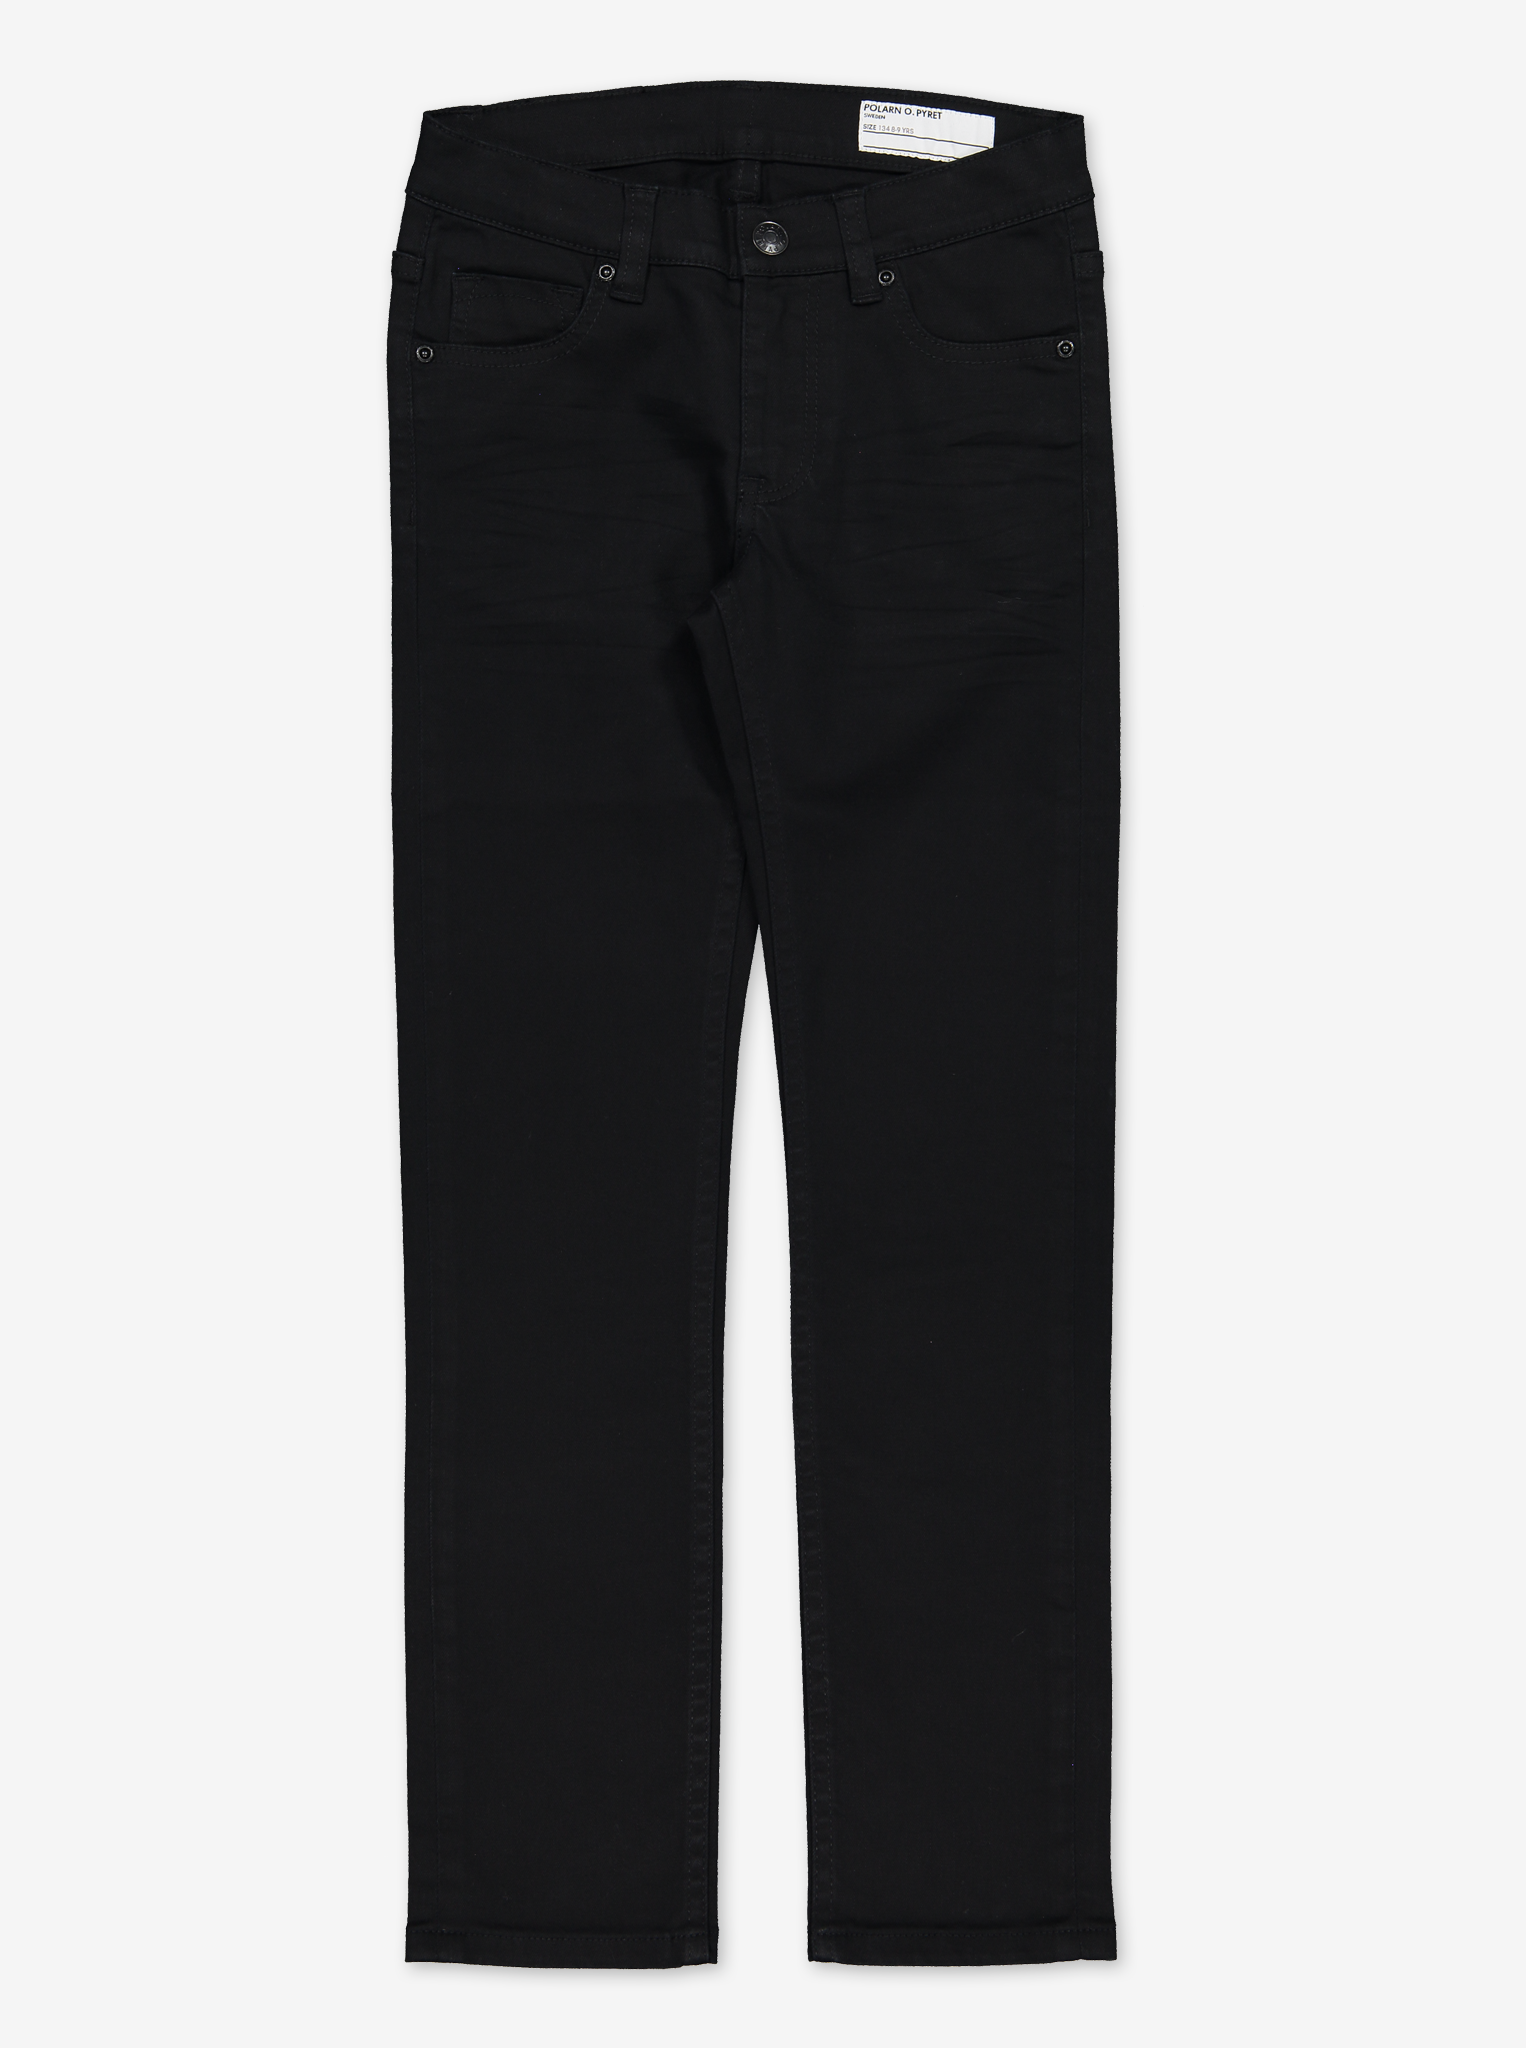 Black Slim Fit Kids Jeans Black Unisex 6-12y